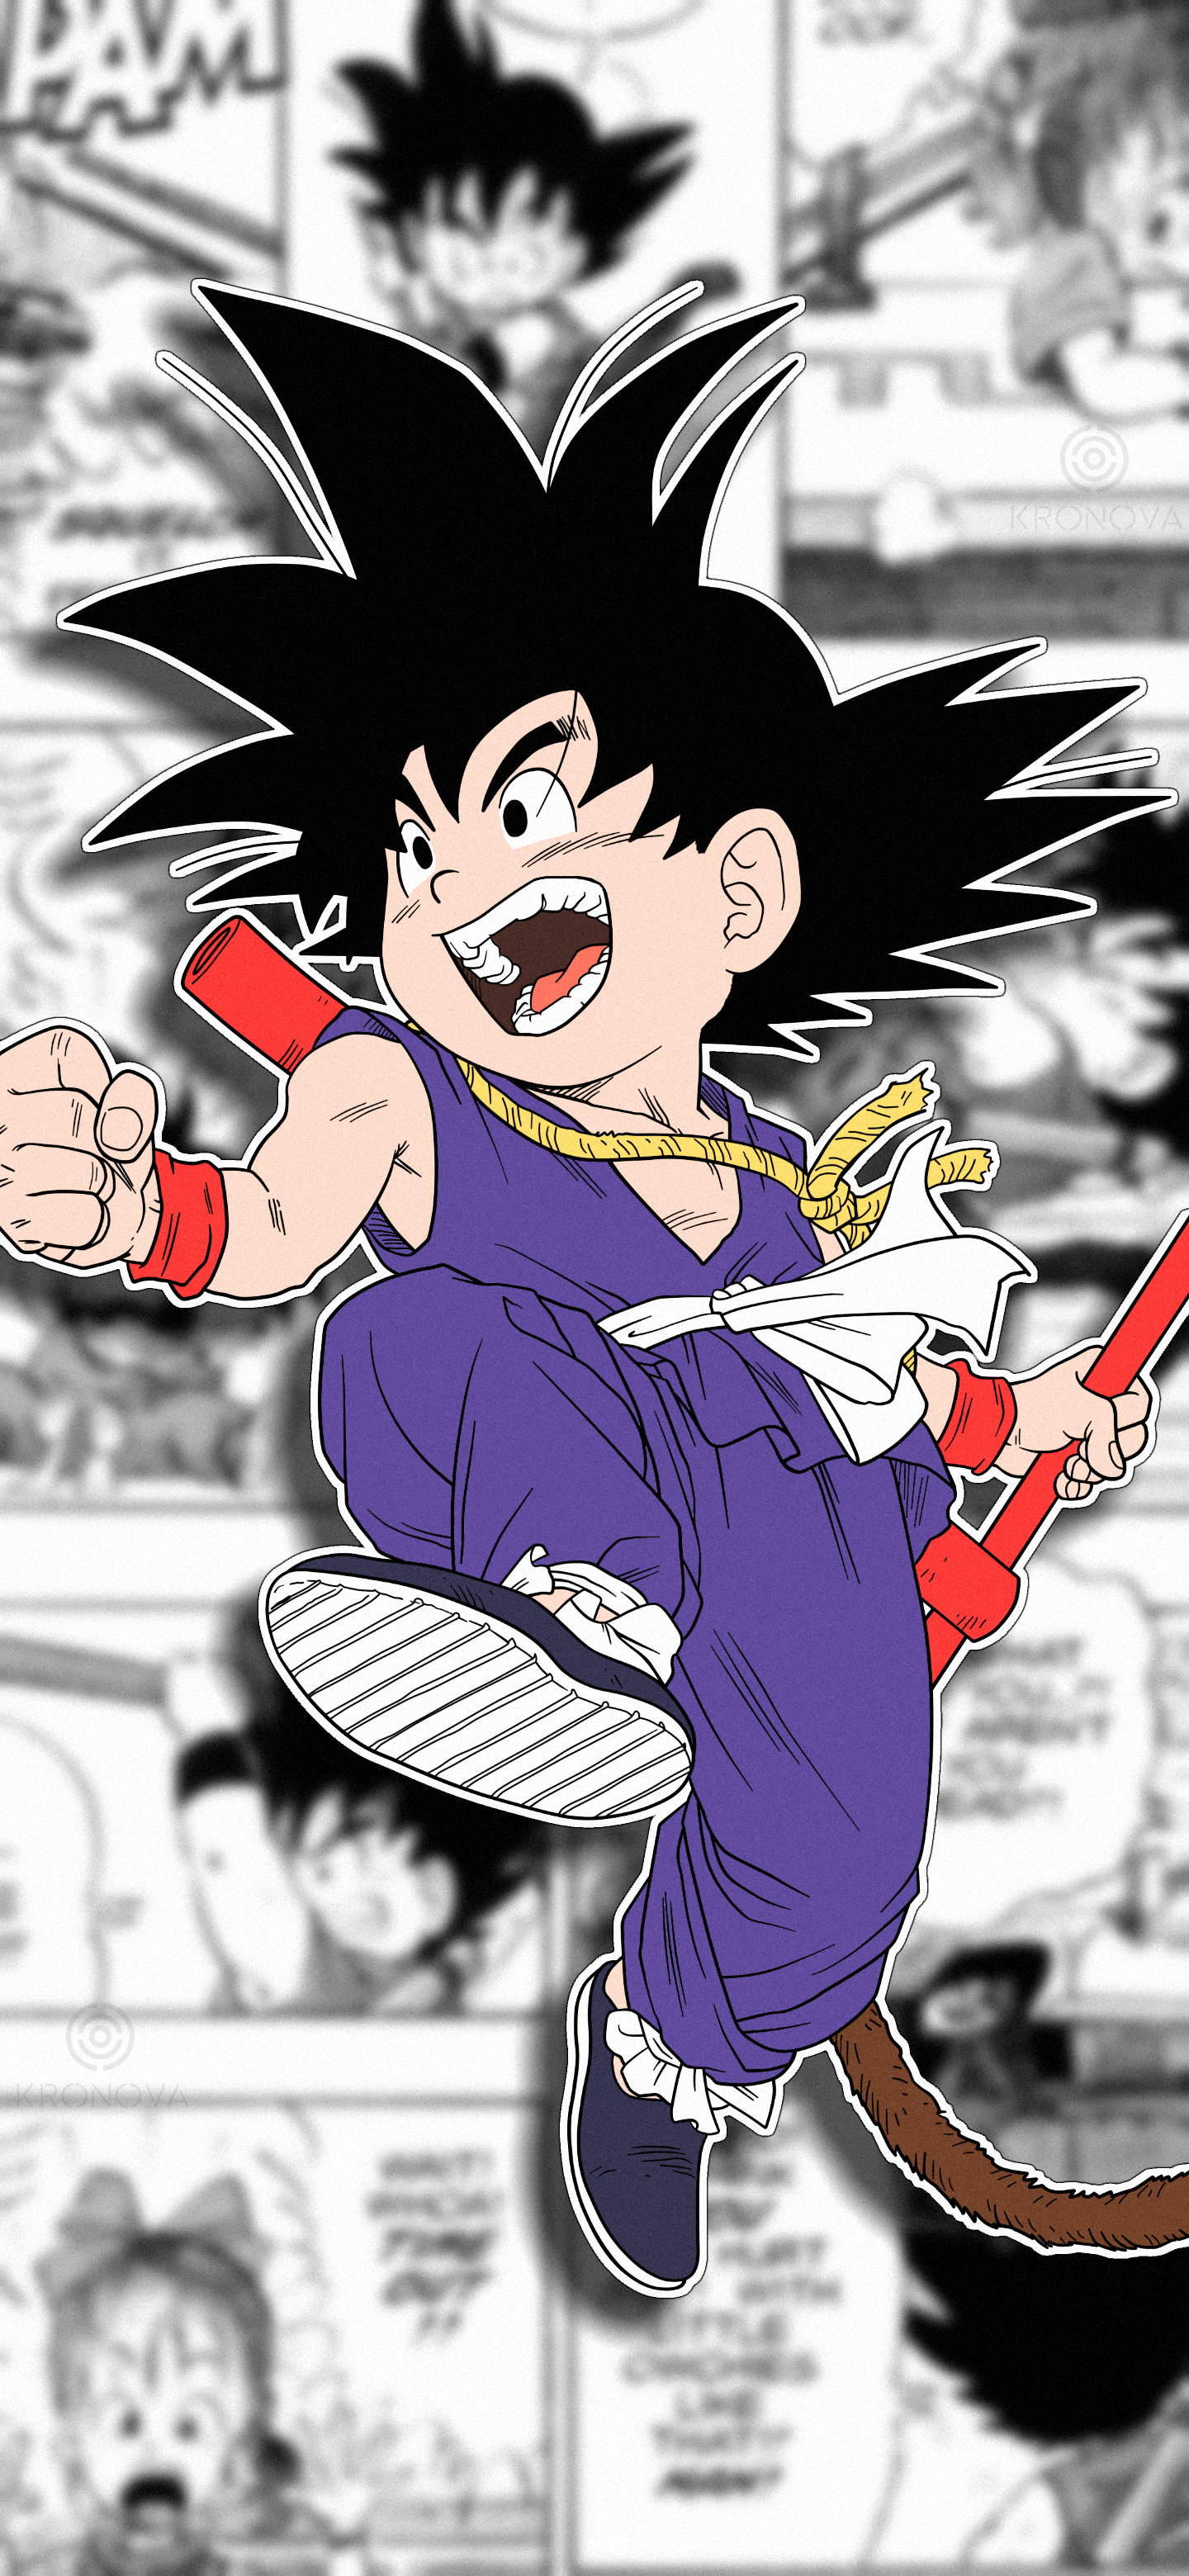 Anime 1440x3120 Dragon Ball Son Goku anime manga